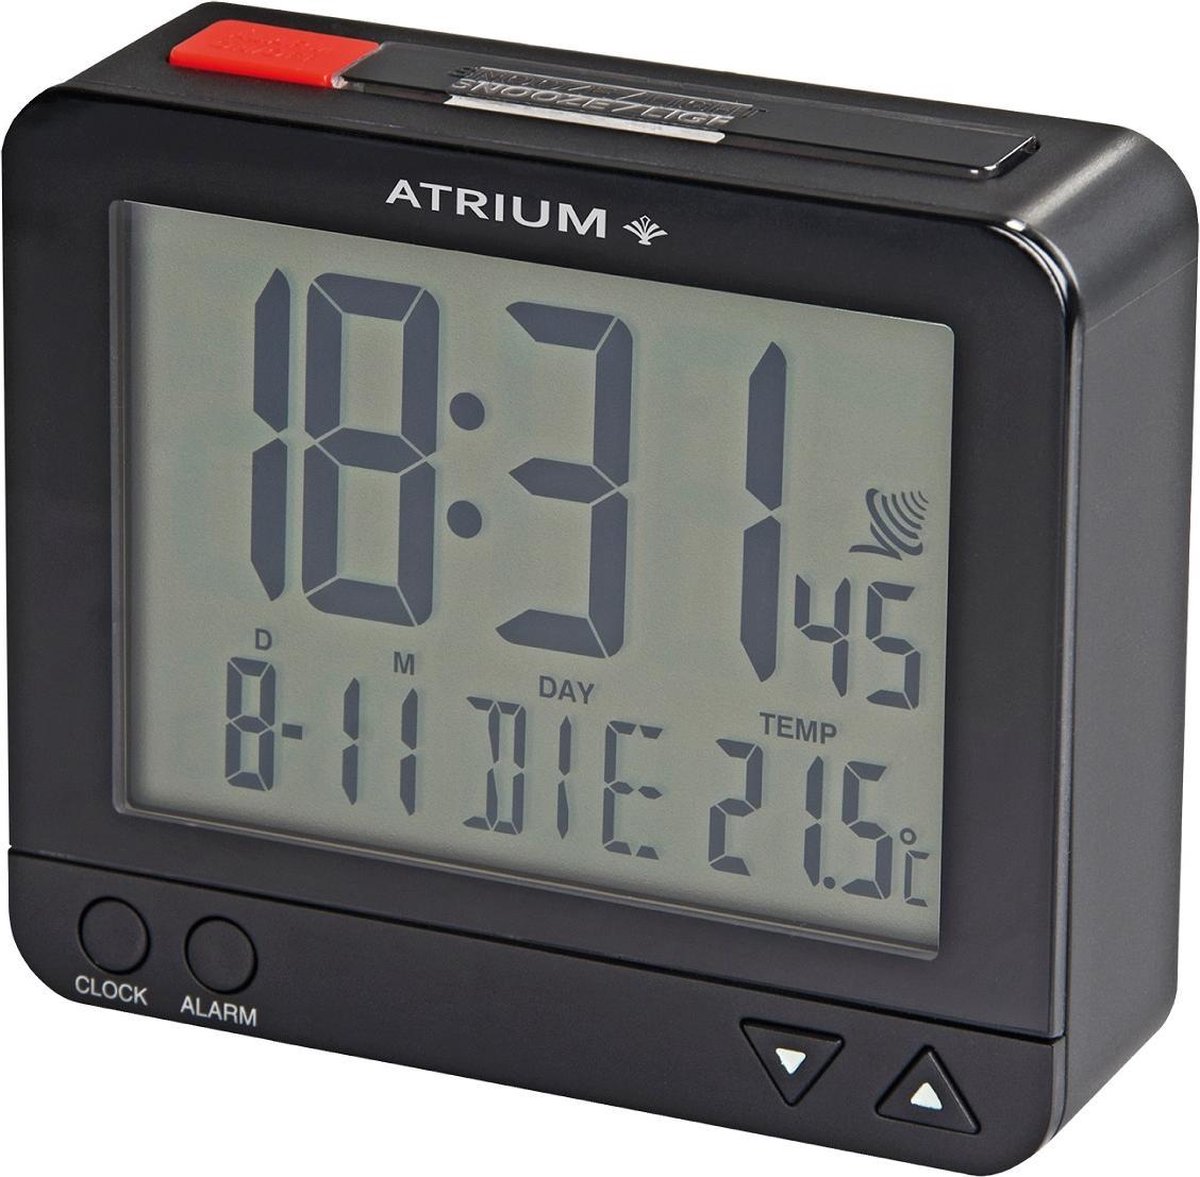 ATRIUM Wekker - Digitaal - Radiogestuurd - Alarm - Zwart - Licht - Opbouwend alarmsignaal - Snooze - Duidelijk - Wektijd - Datum - Weekdag - Binnentemperatuur - A760-7